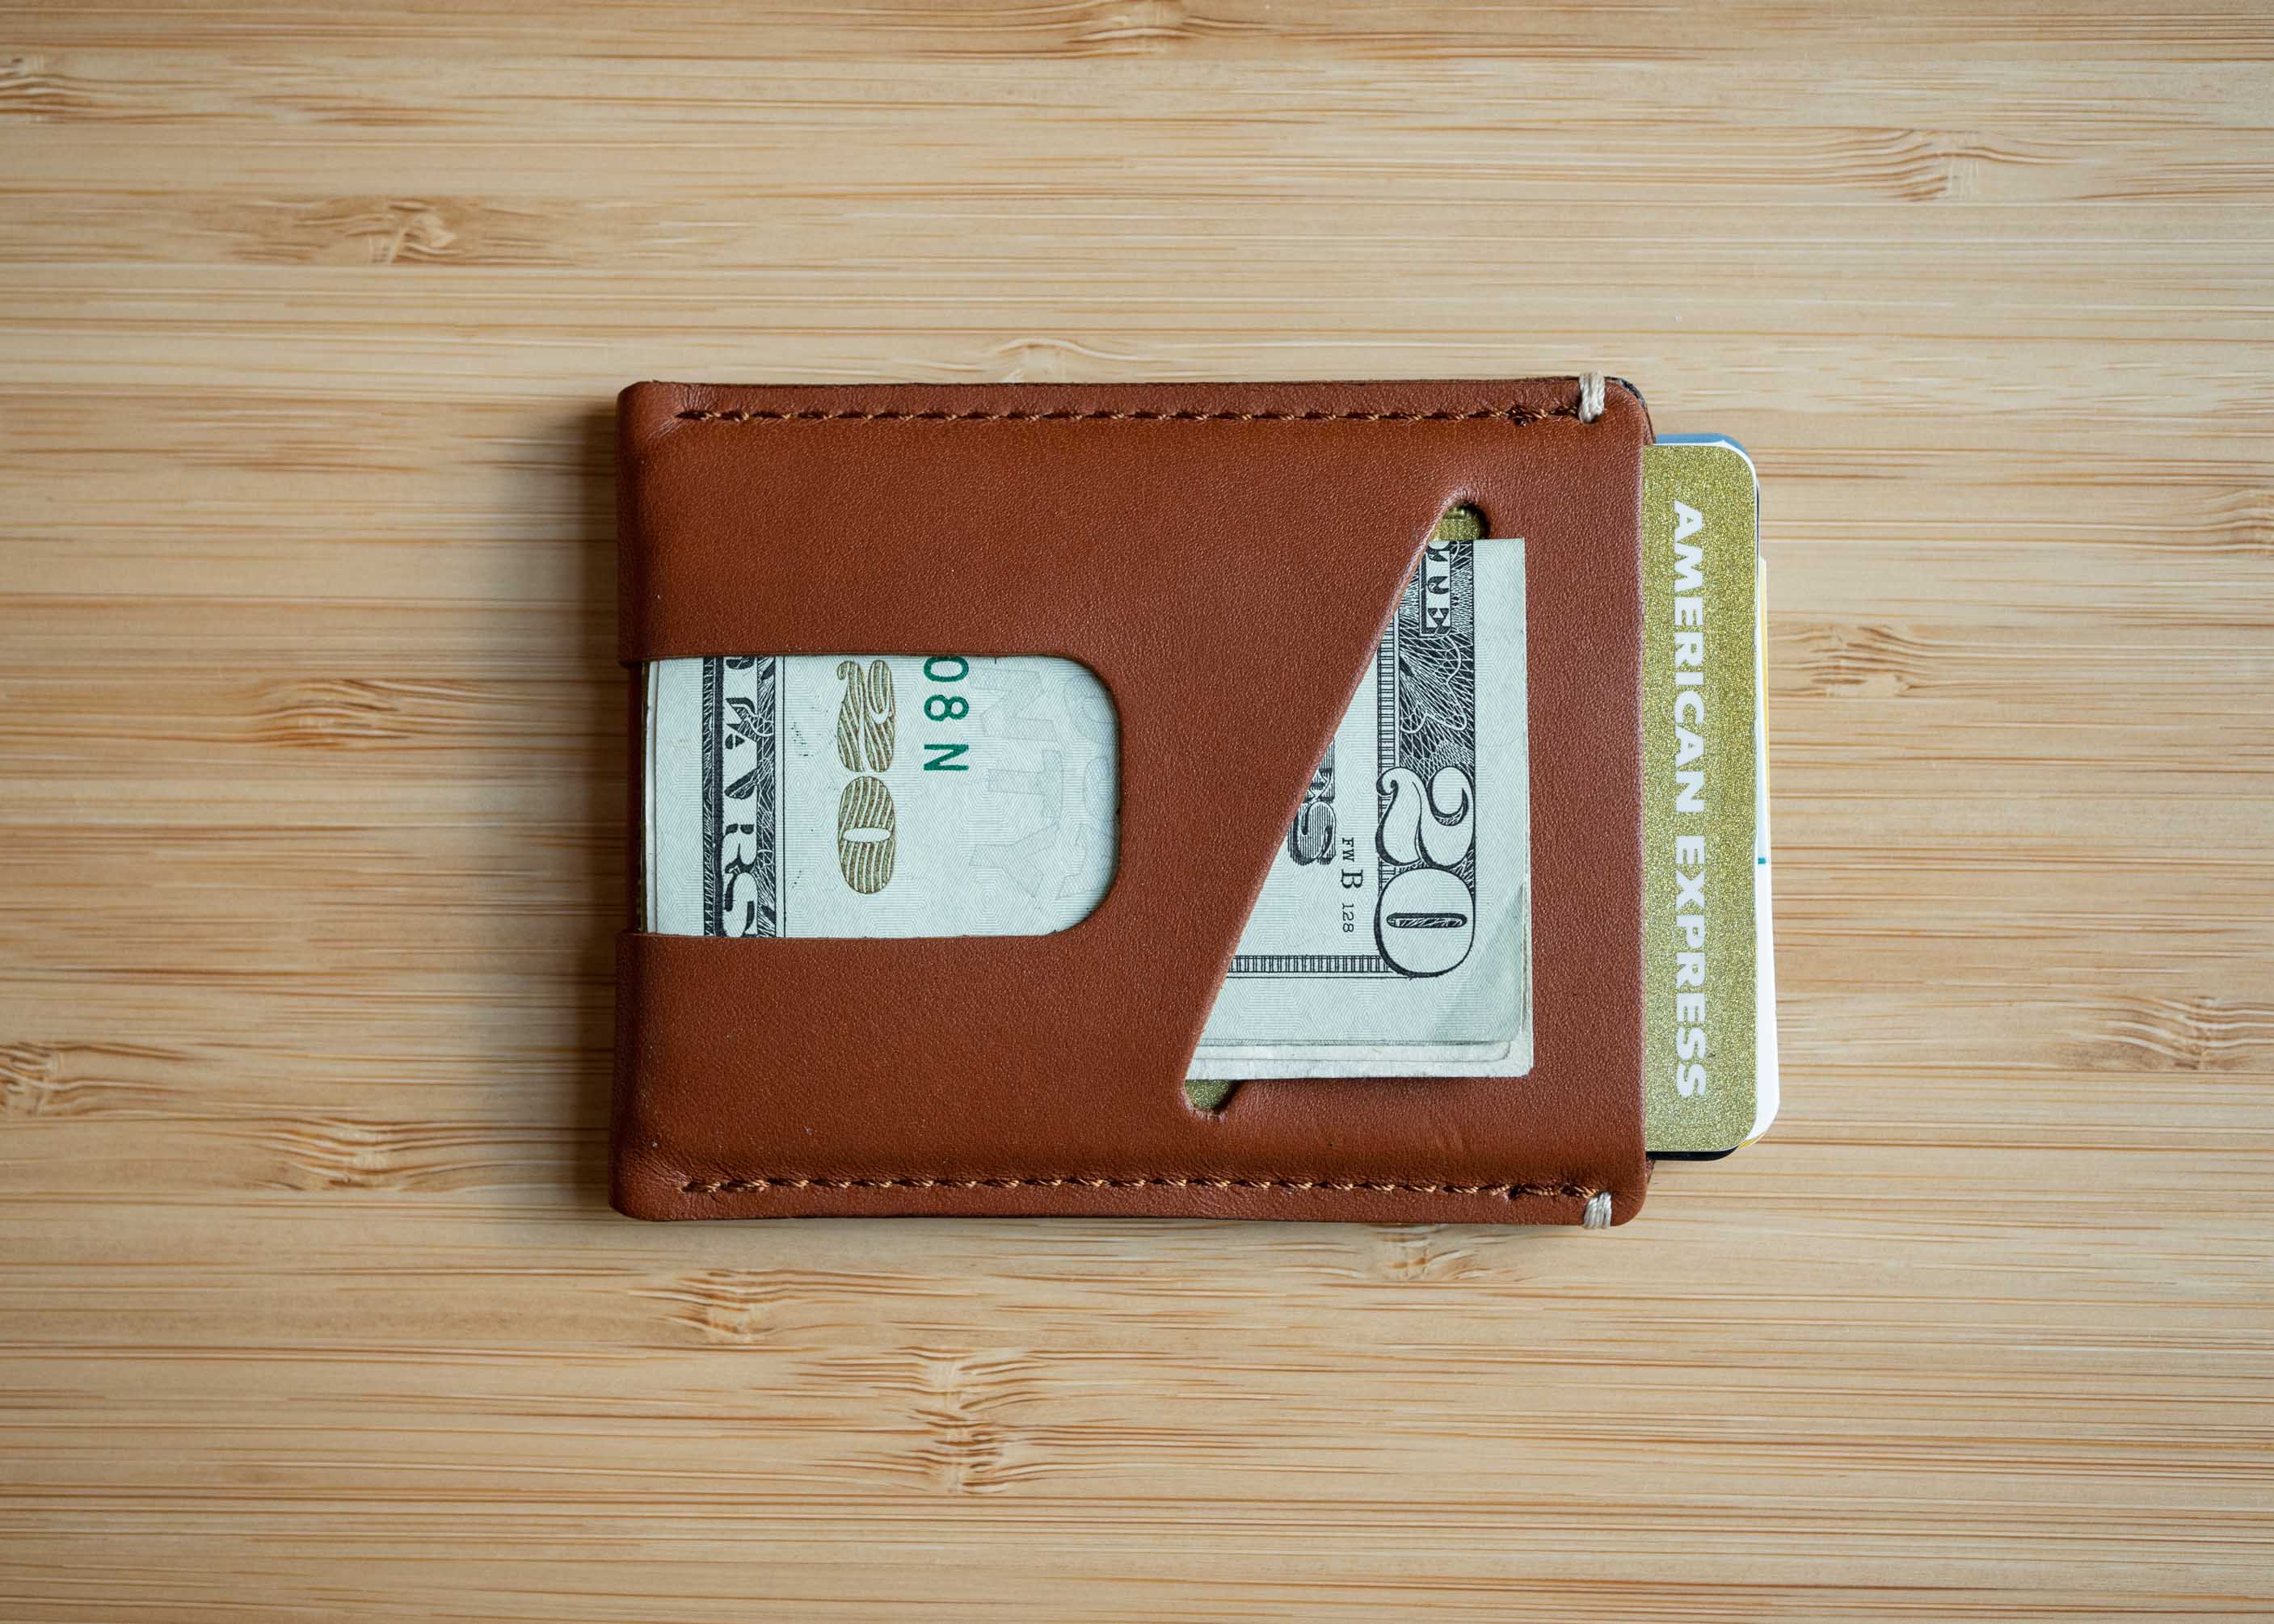 Anson Calder wallet with cash slot